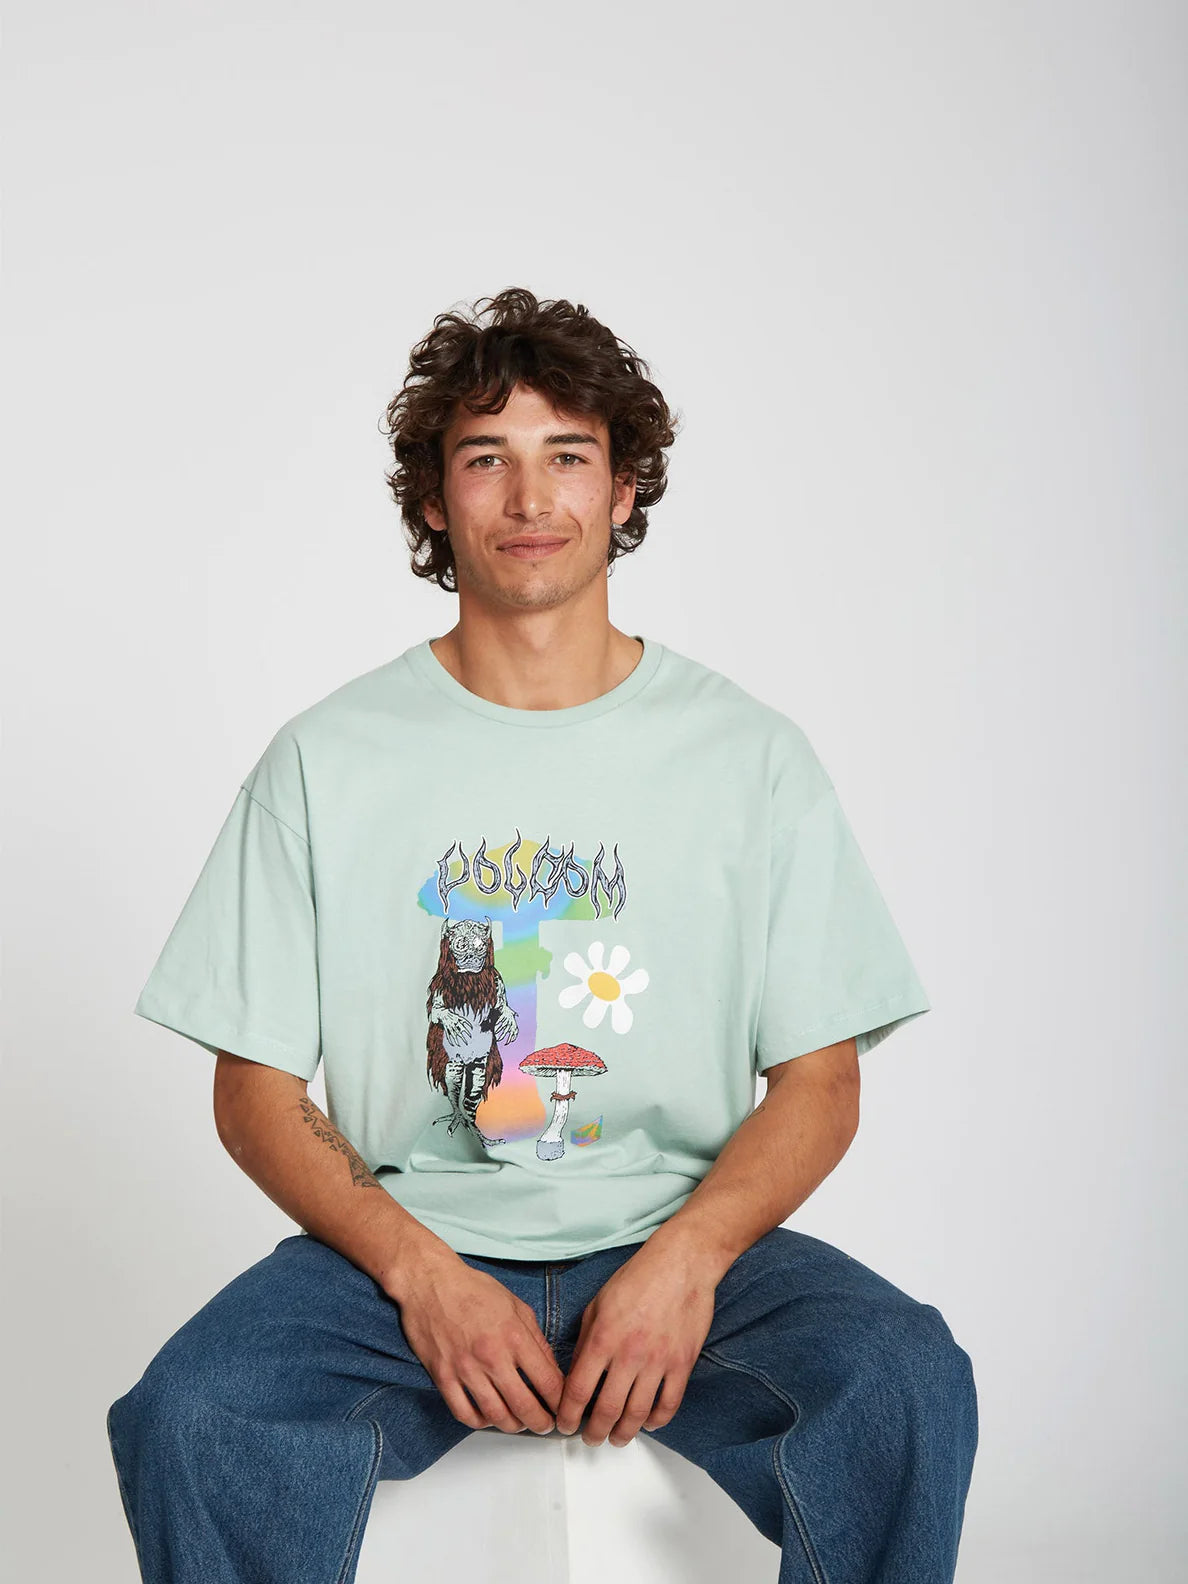 Camiseta Volcom Chrissie Abbott x French Lichen Green | Camisetas de hombre | Camisetas manga corta de hombre | Volcom Shop | surfdevils.com